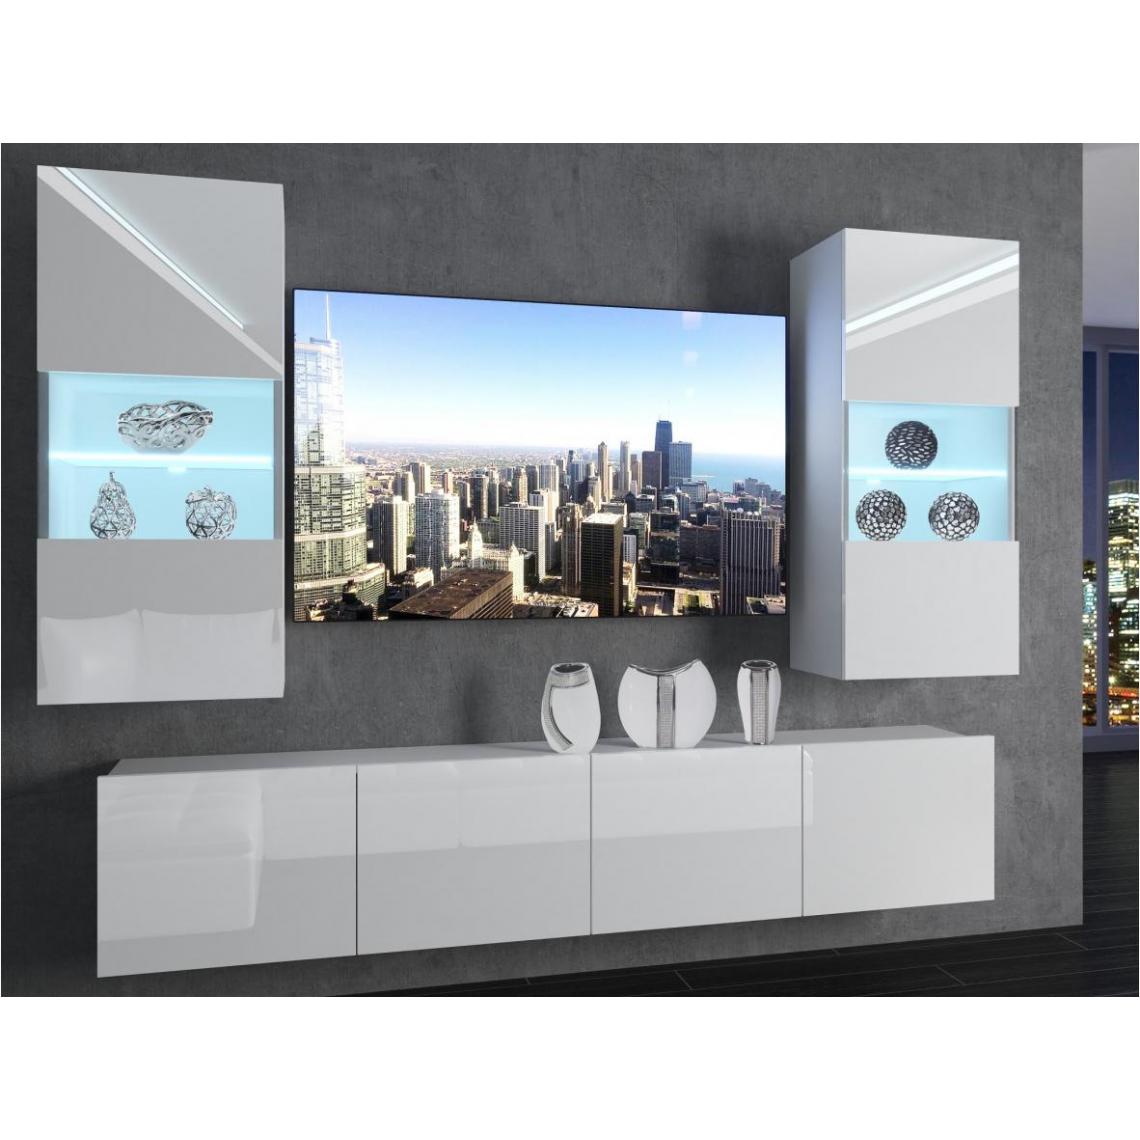 Hucoco - CYAN - Ensemble meubles TV - Unité murale largeur 200 cm - Mur TV à suspendre - 2 meuble vitrines - Sans LED - Blanc - Meubles TV, Hi-Fi